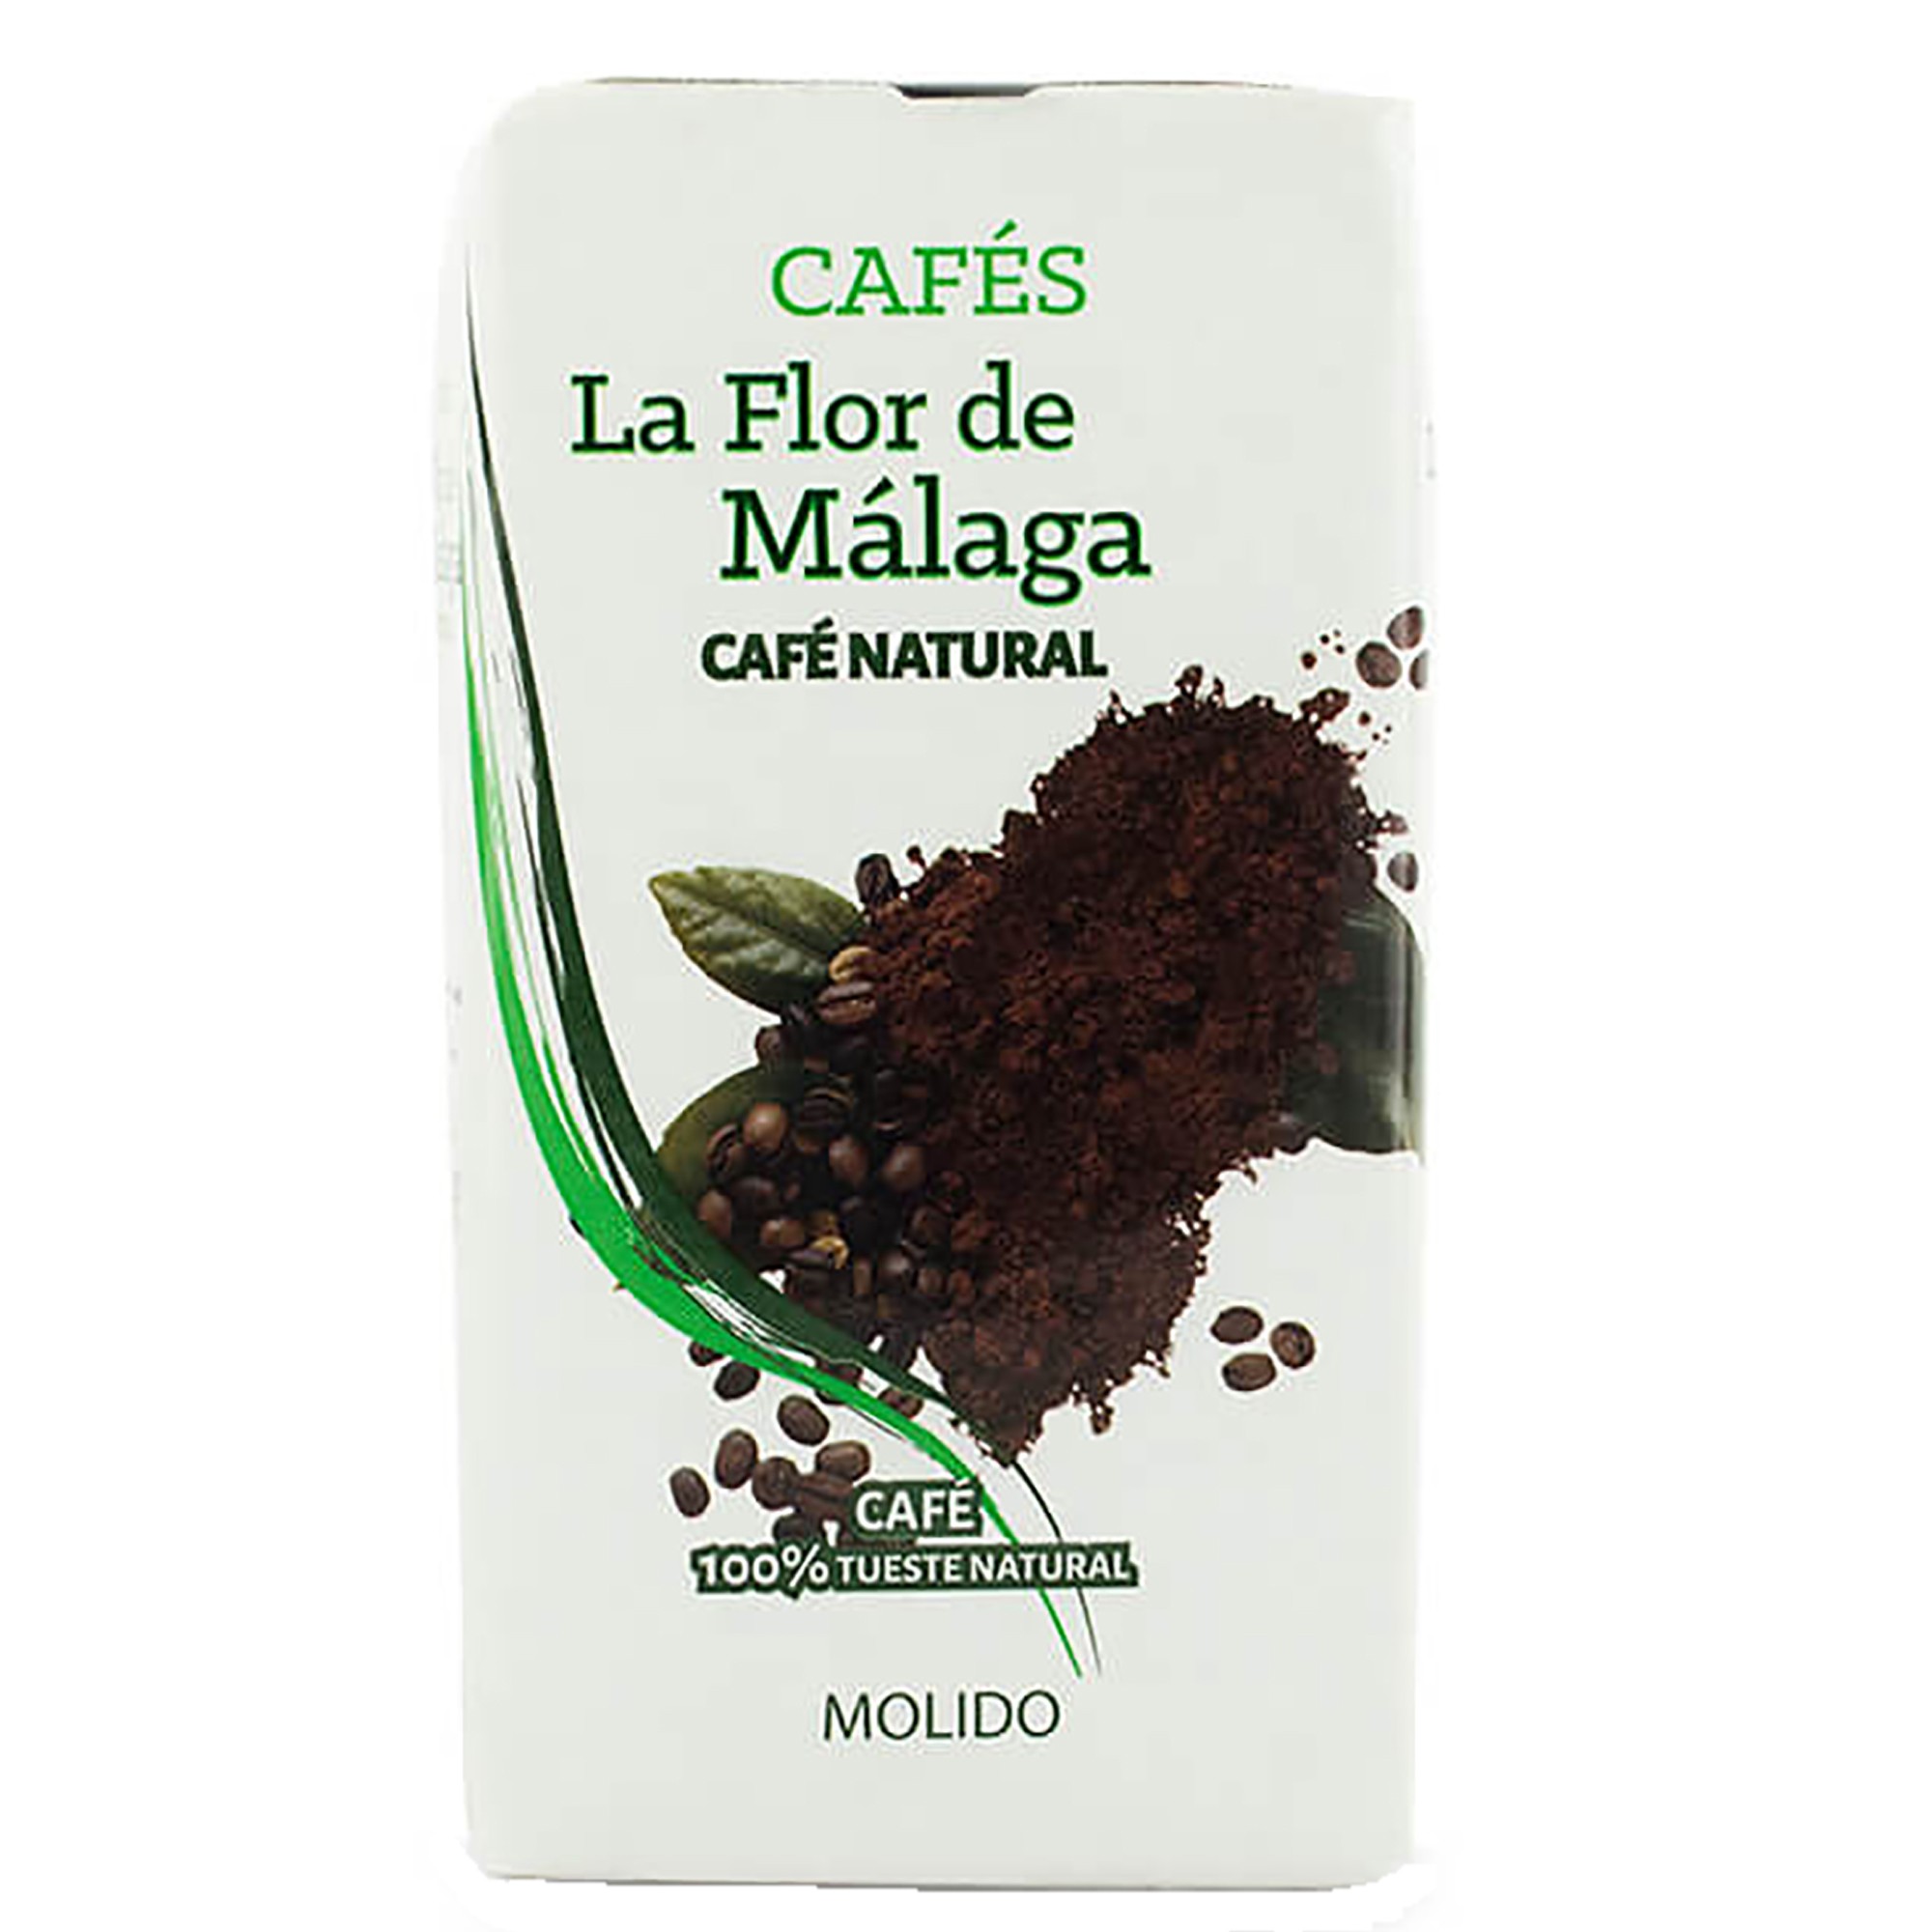 https://aceitesmalaga.com/catalogo/2545/cafe-molido-natural-la-flor-de-malaga-250-gr.jpg